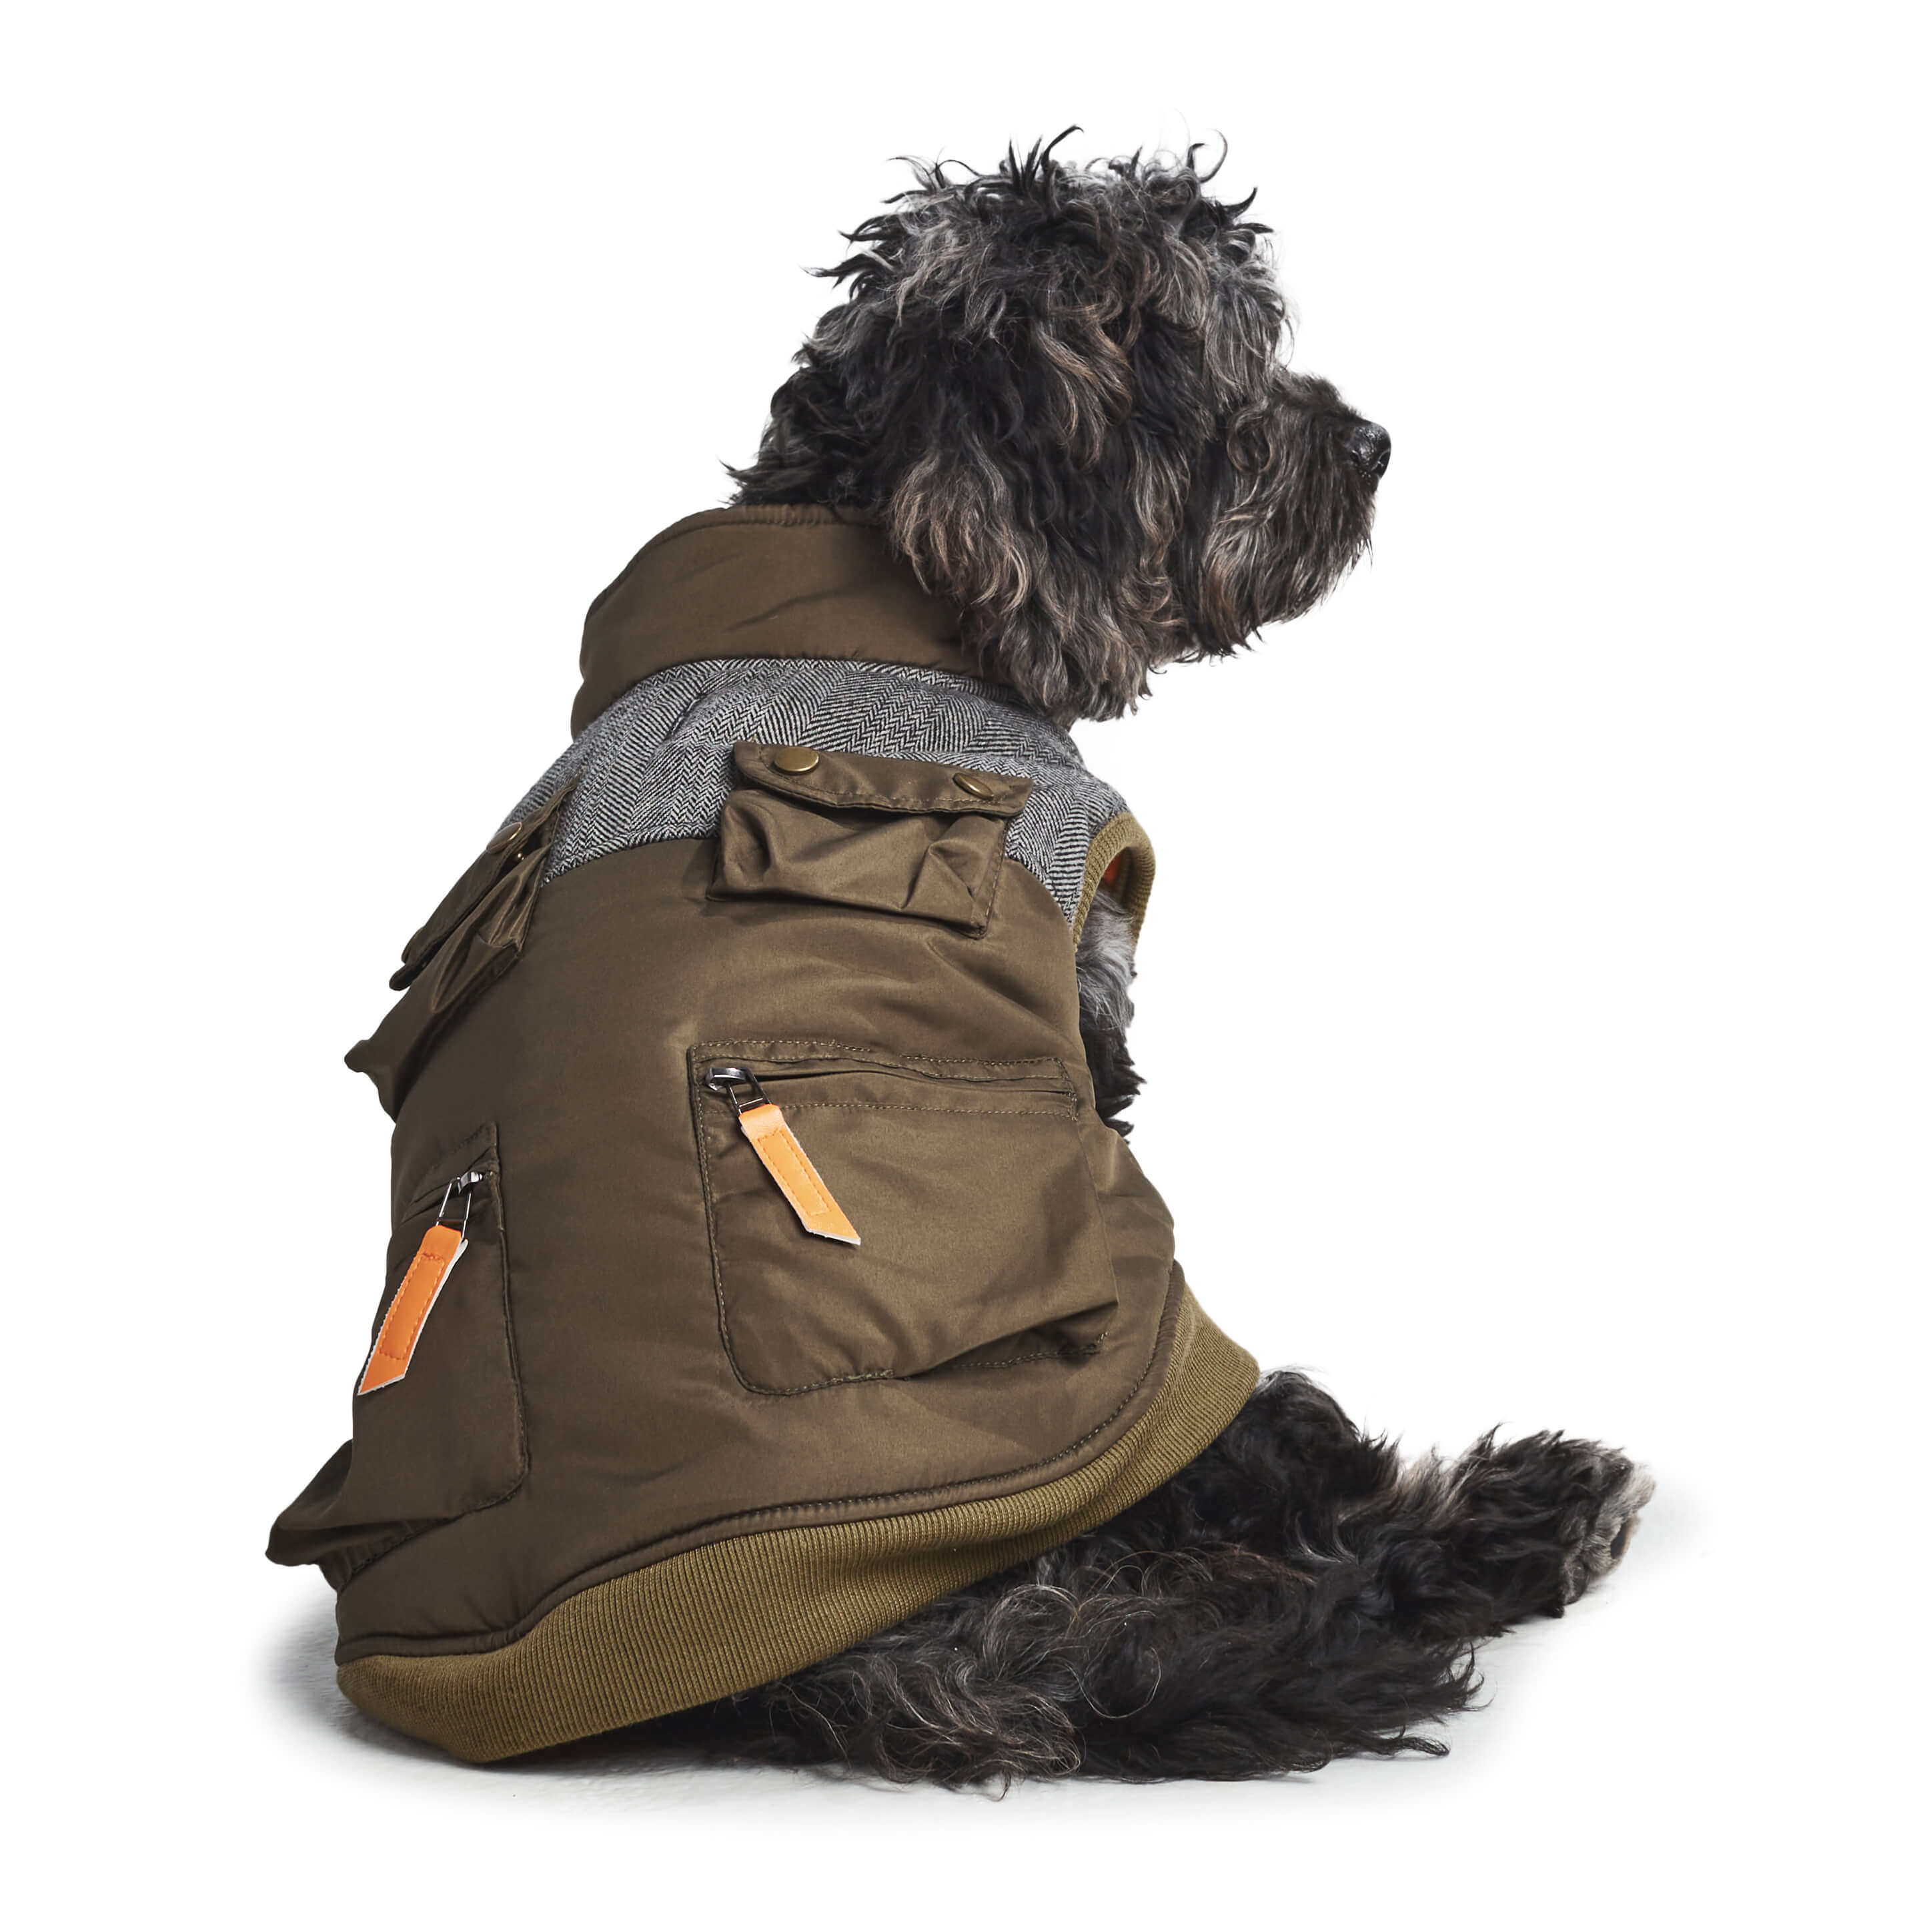 Dog wearing olive utility jacket. Back view